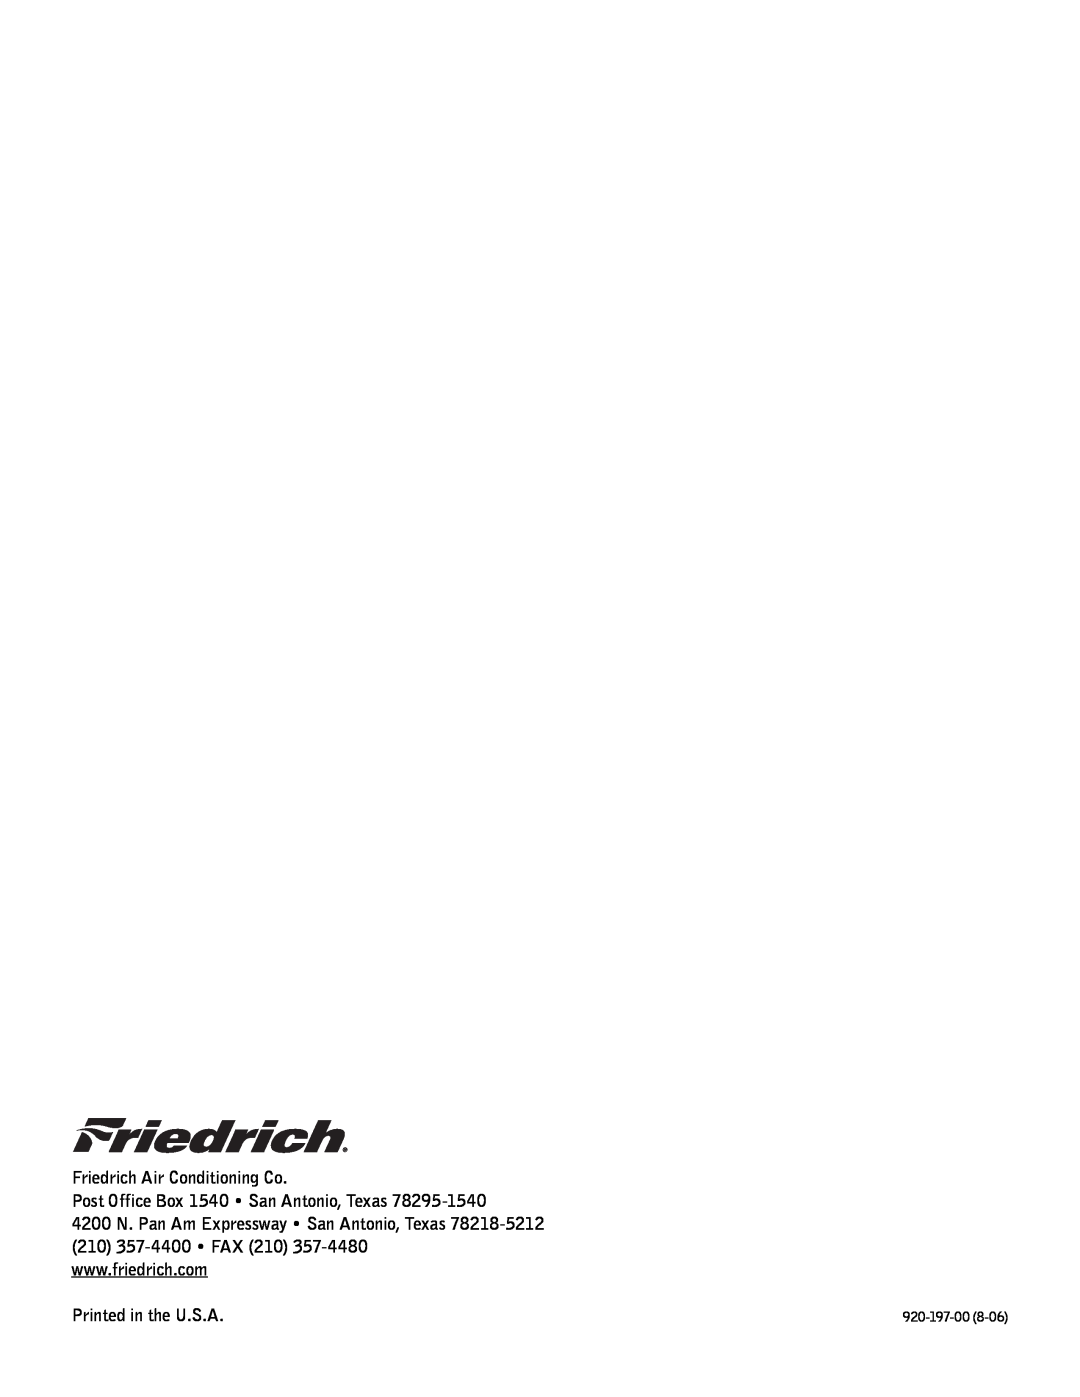 Friedrich XQ08, XQ06, XQ05, XQ10, XQ12 Friedrich Air Conditioning Co, Post Office Box 1540 San Antonio, Texas, 920-197-00 